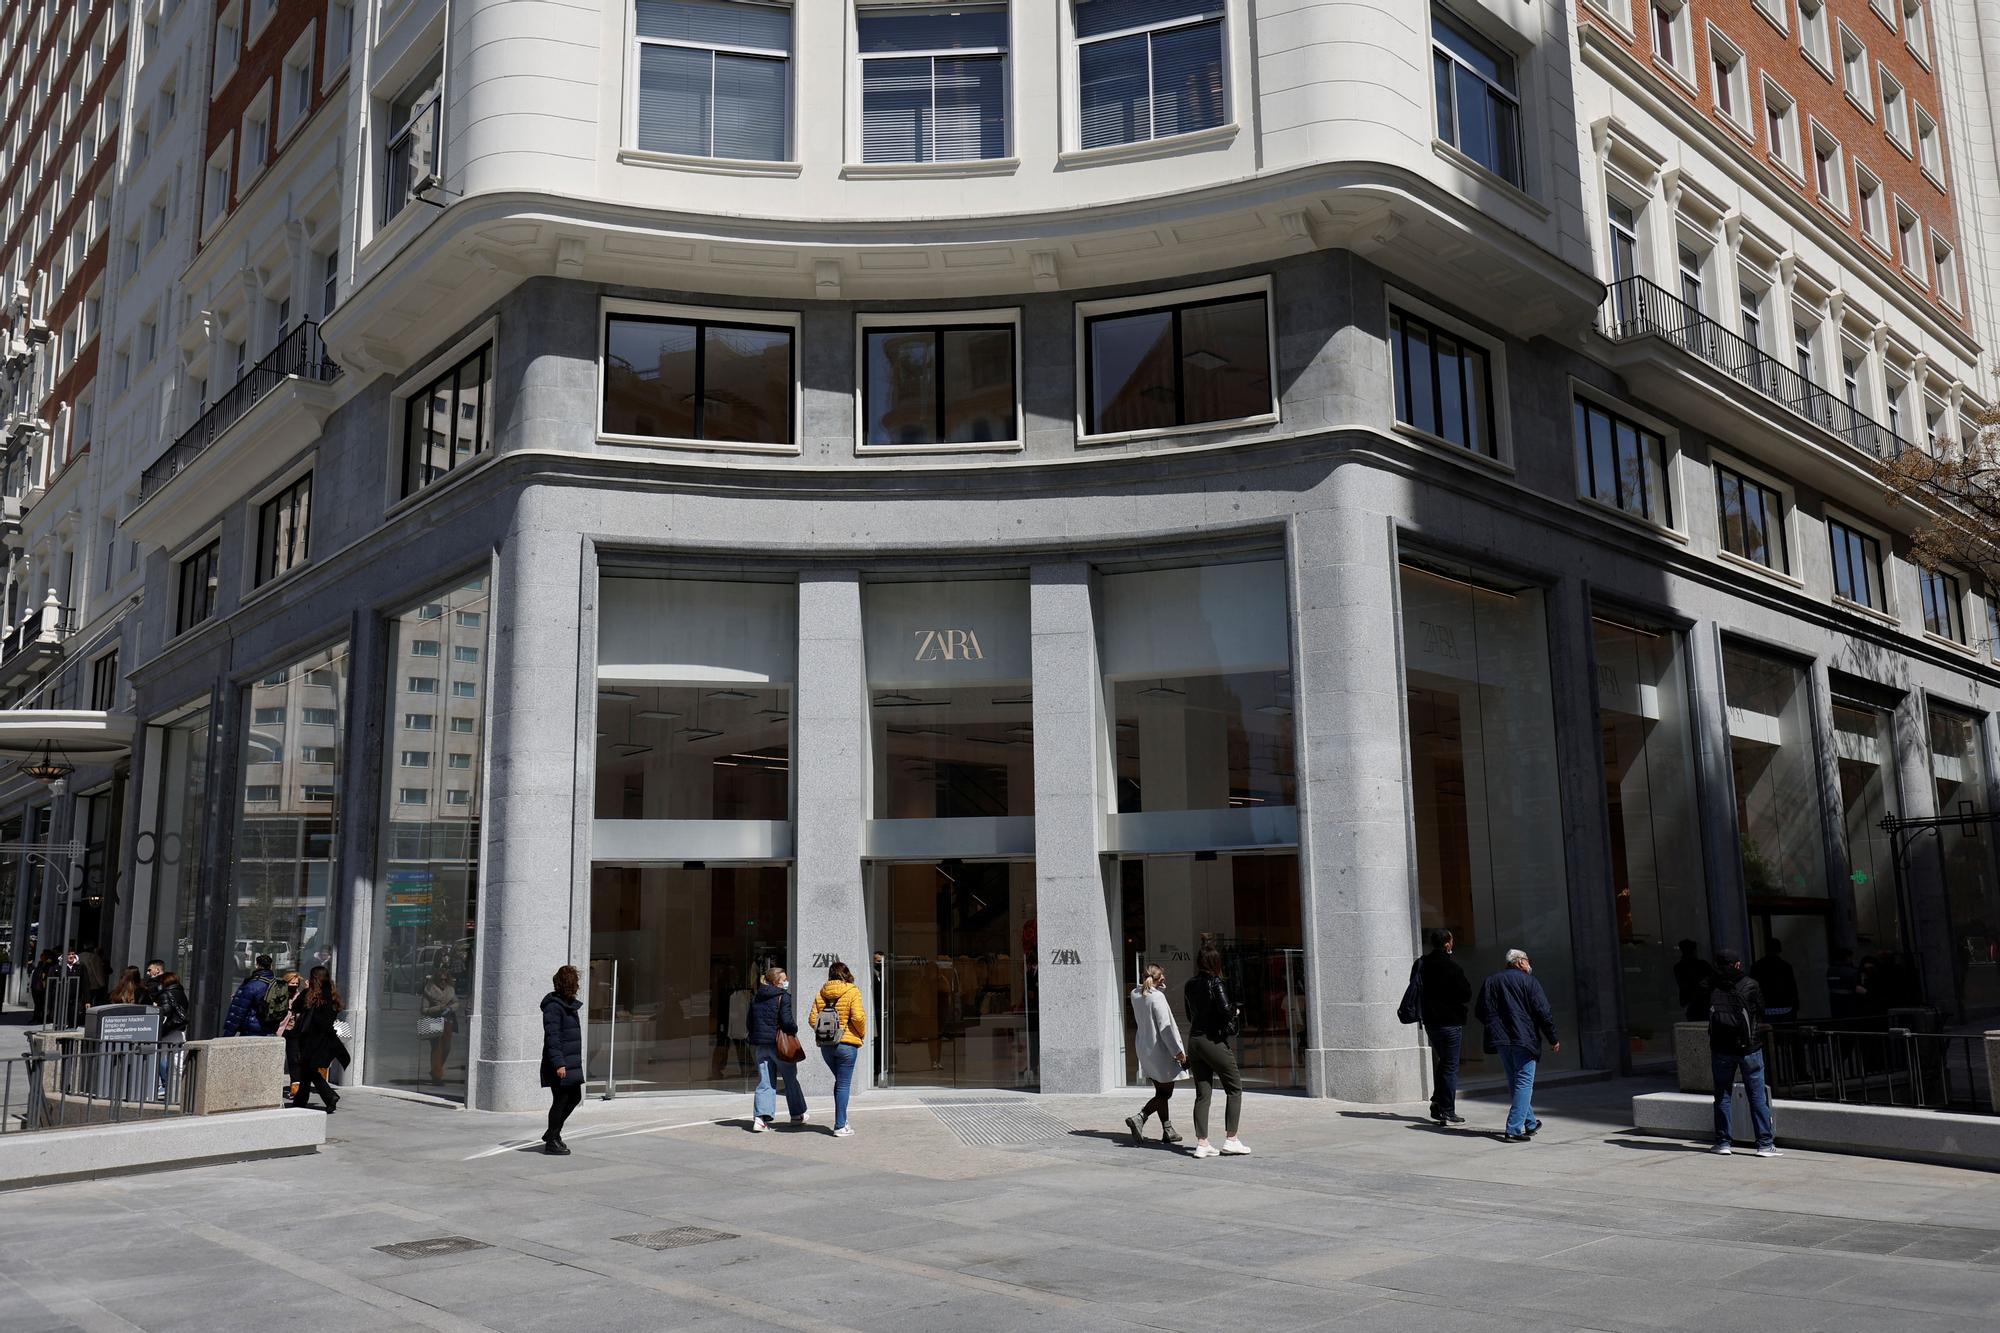 El modelo más avanzado de Zara se instala en la plaza de España de Madrid